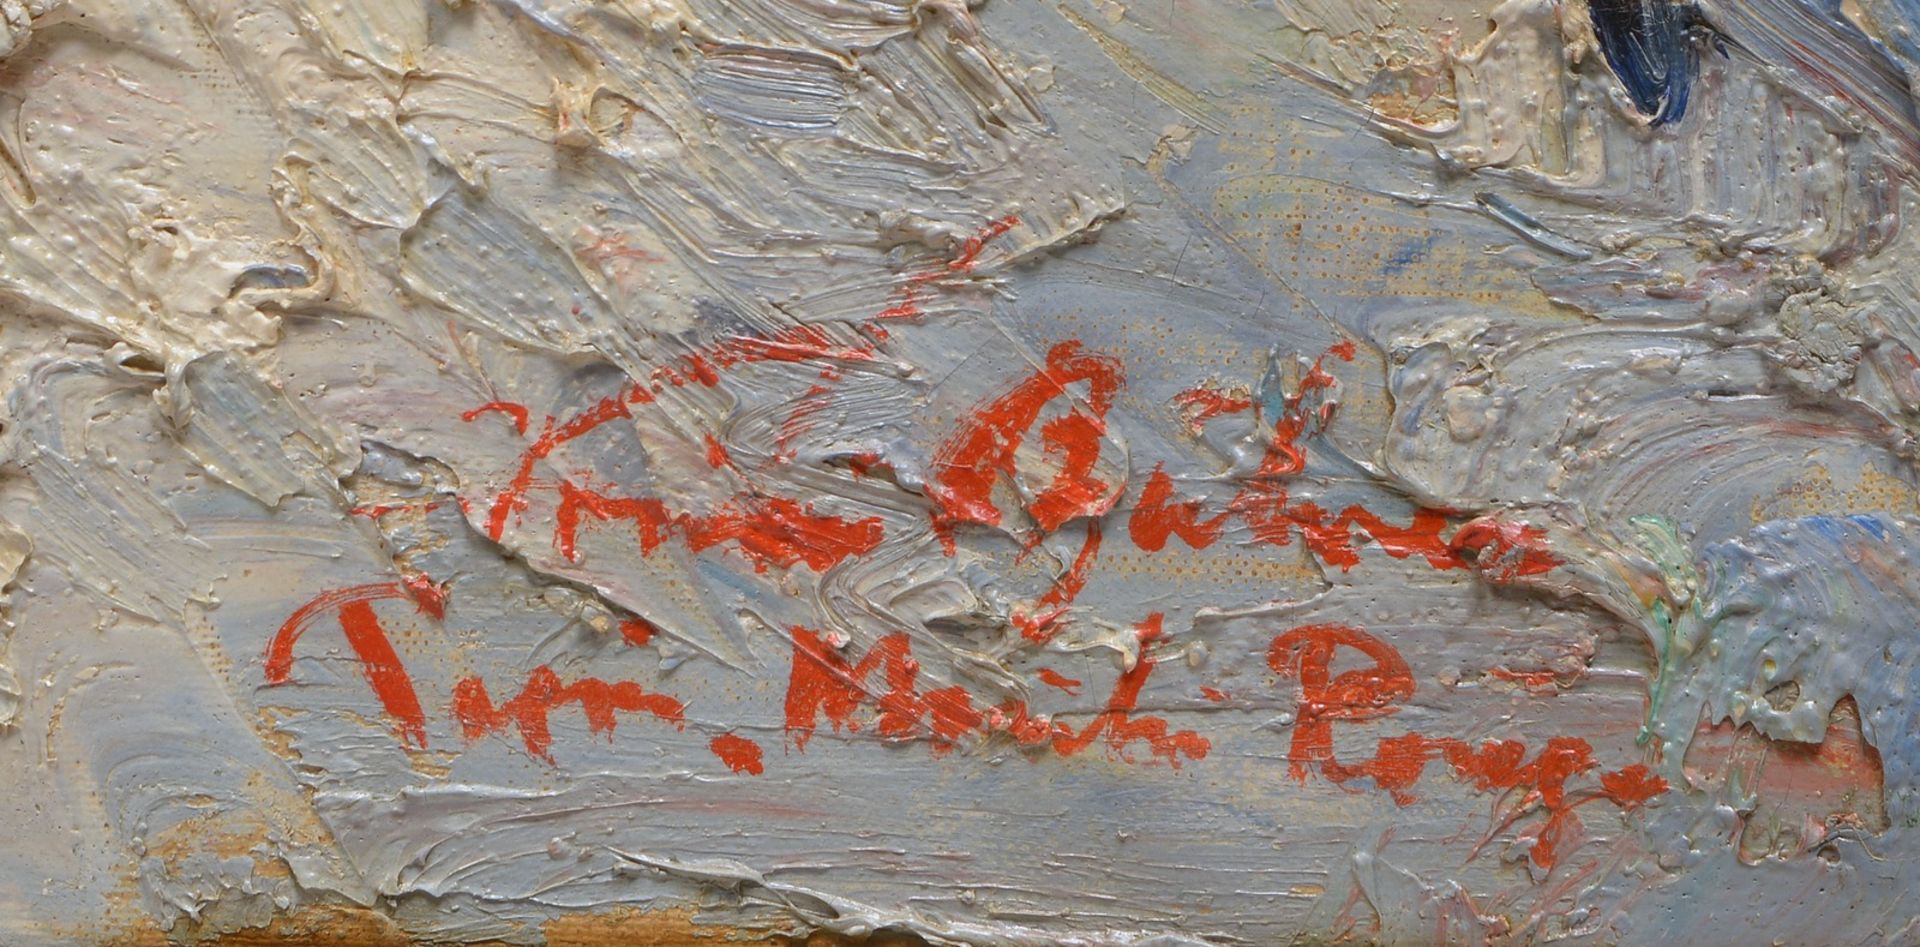 Gemälde, 'Moulin Rouge - Paris', Öl/Lw, sign. 'Behrens'(?) und betitelt; Bildmaße 57 x 67 cm  - Bild 2 aus 3